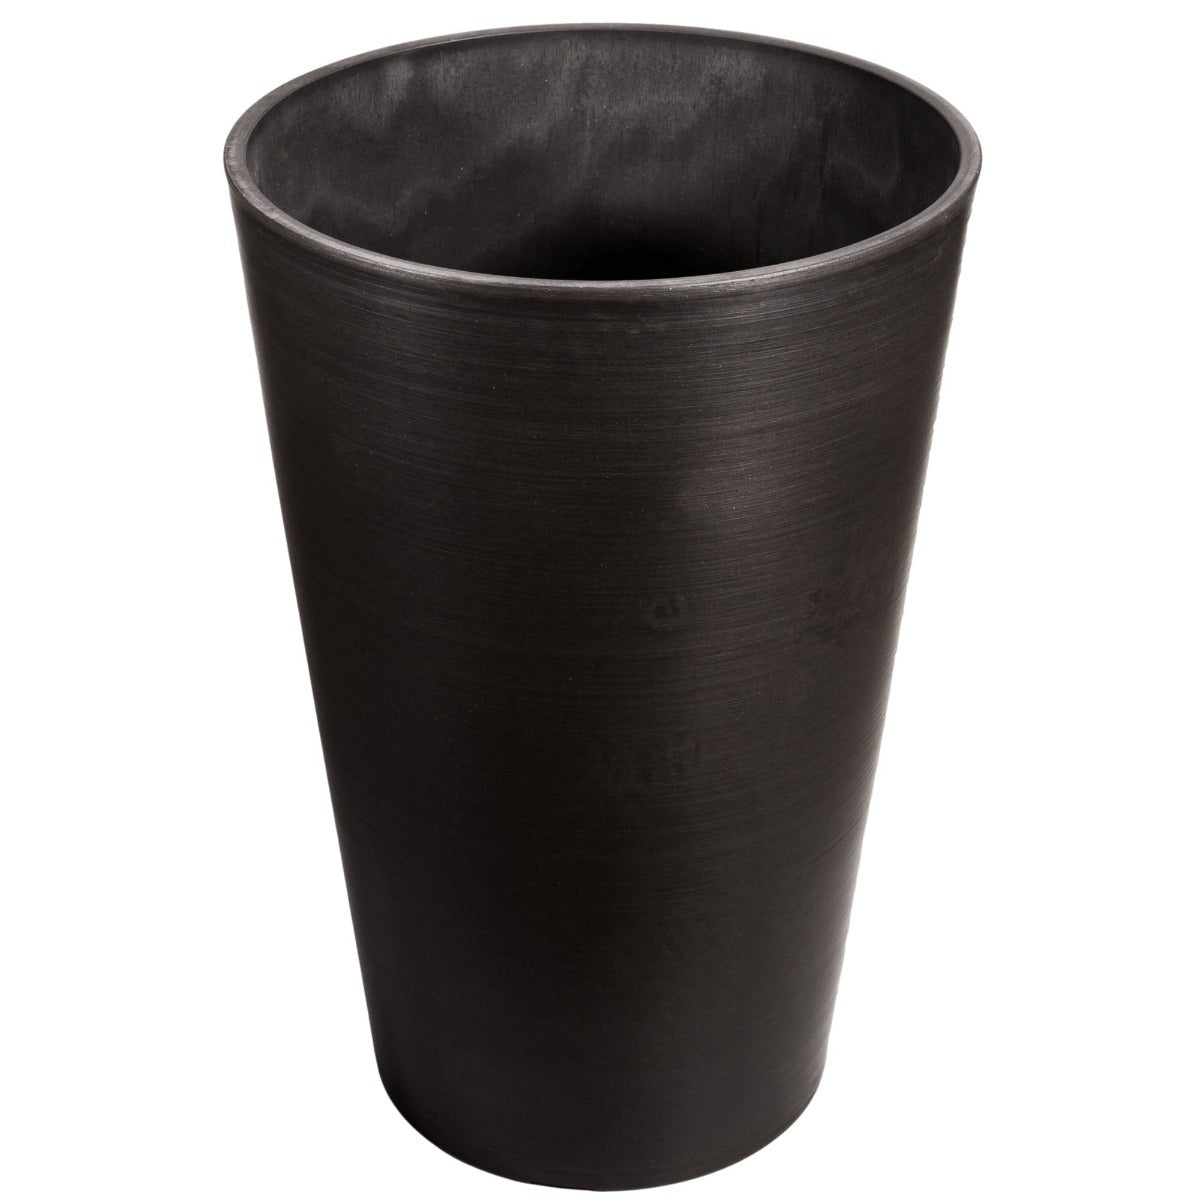 dark-grey-round-planter-47cm